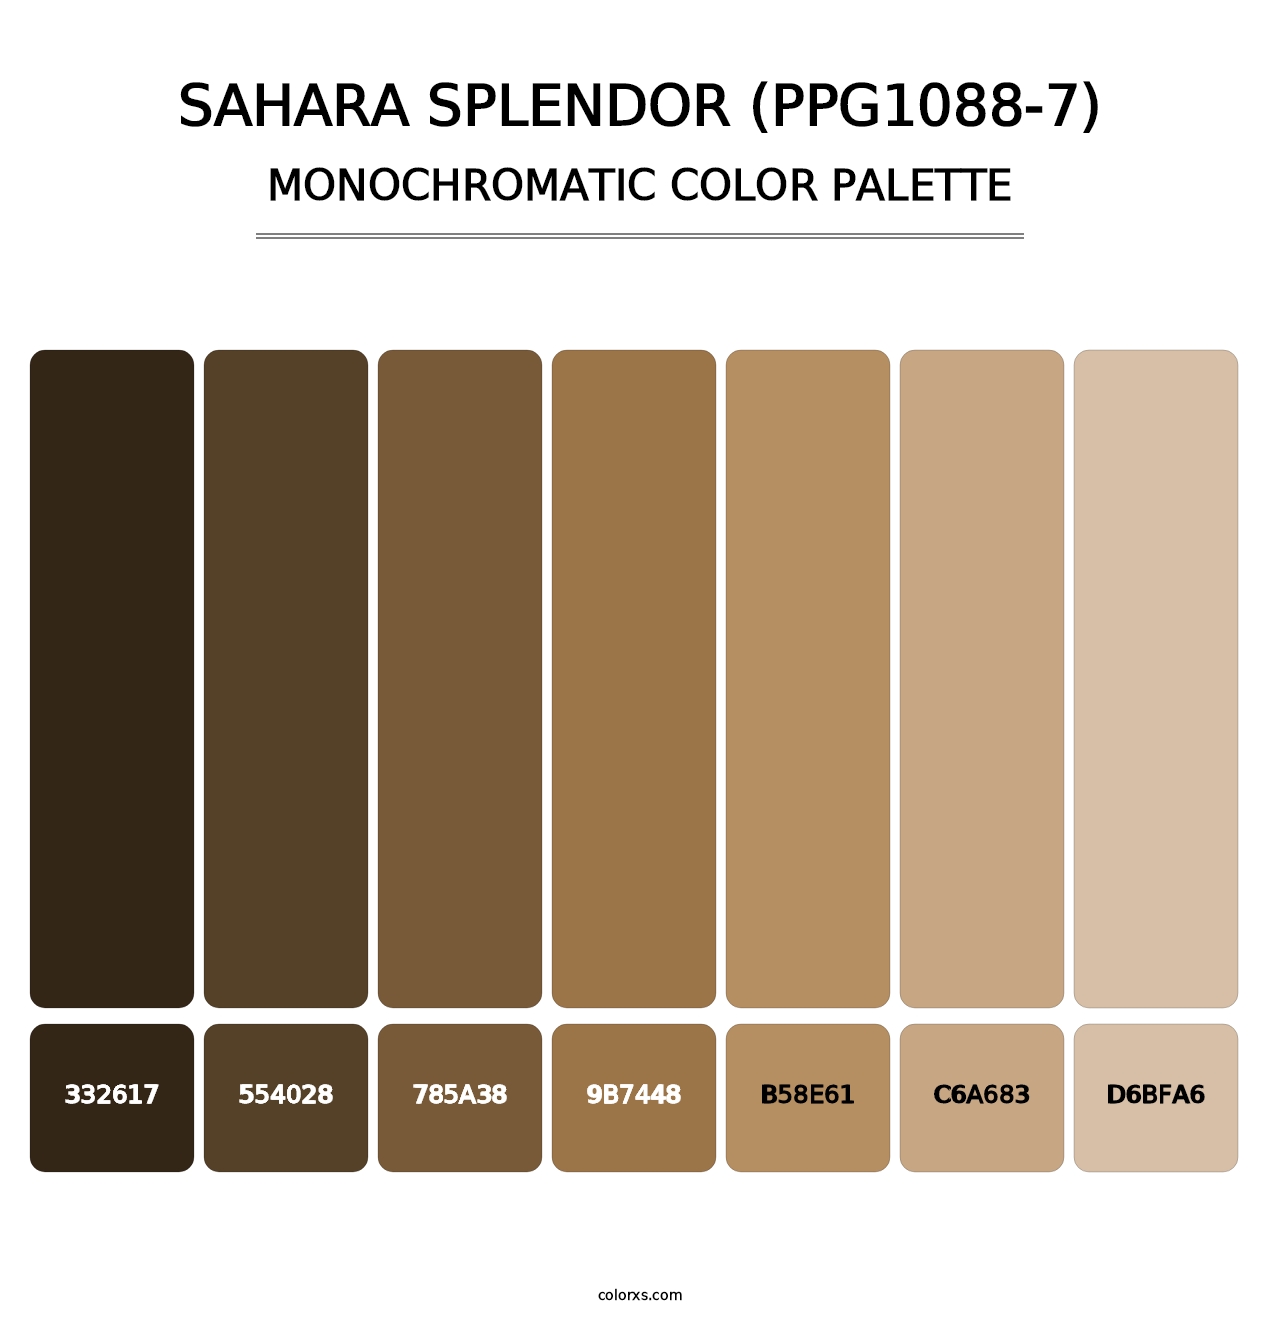 Sahara Splendor (PPG1088-7) - Monochromatic Color Palette